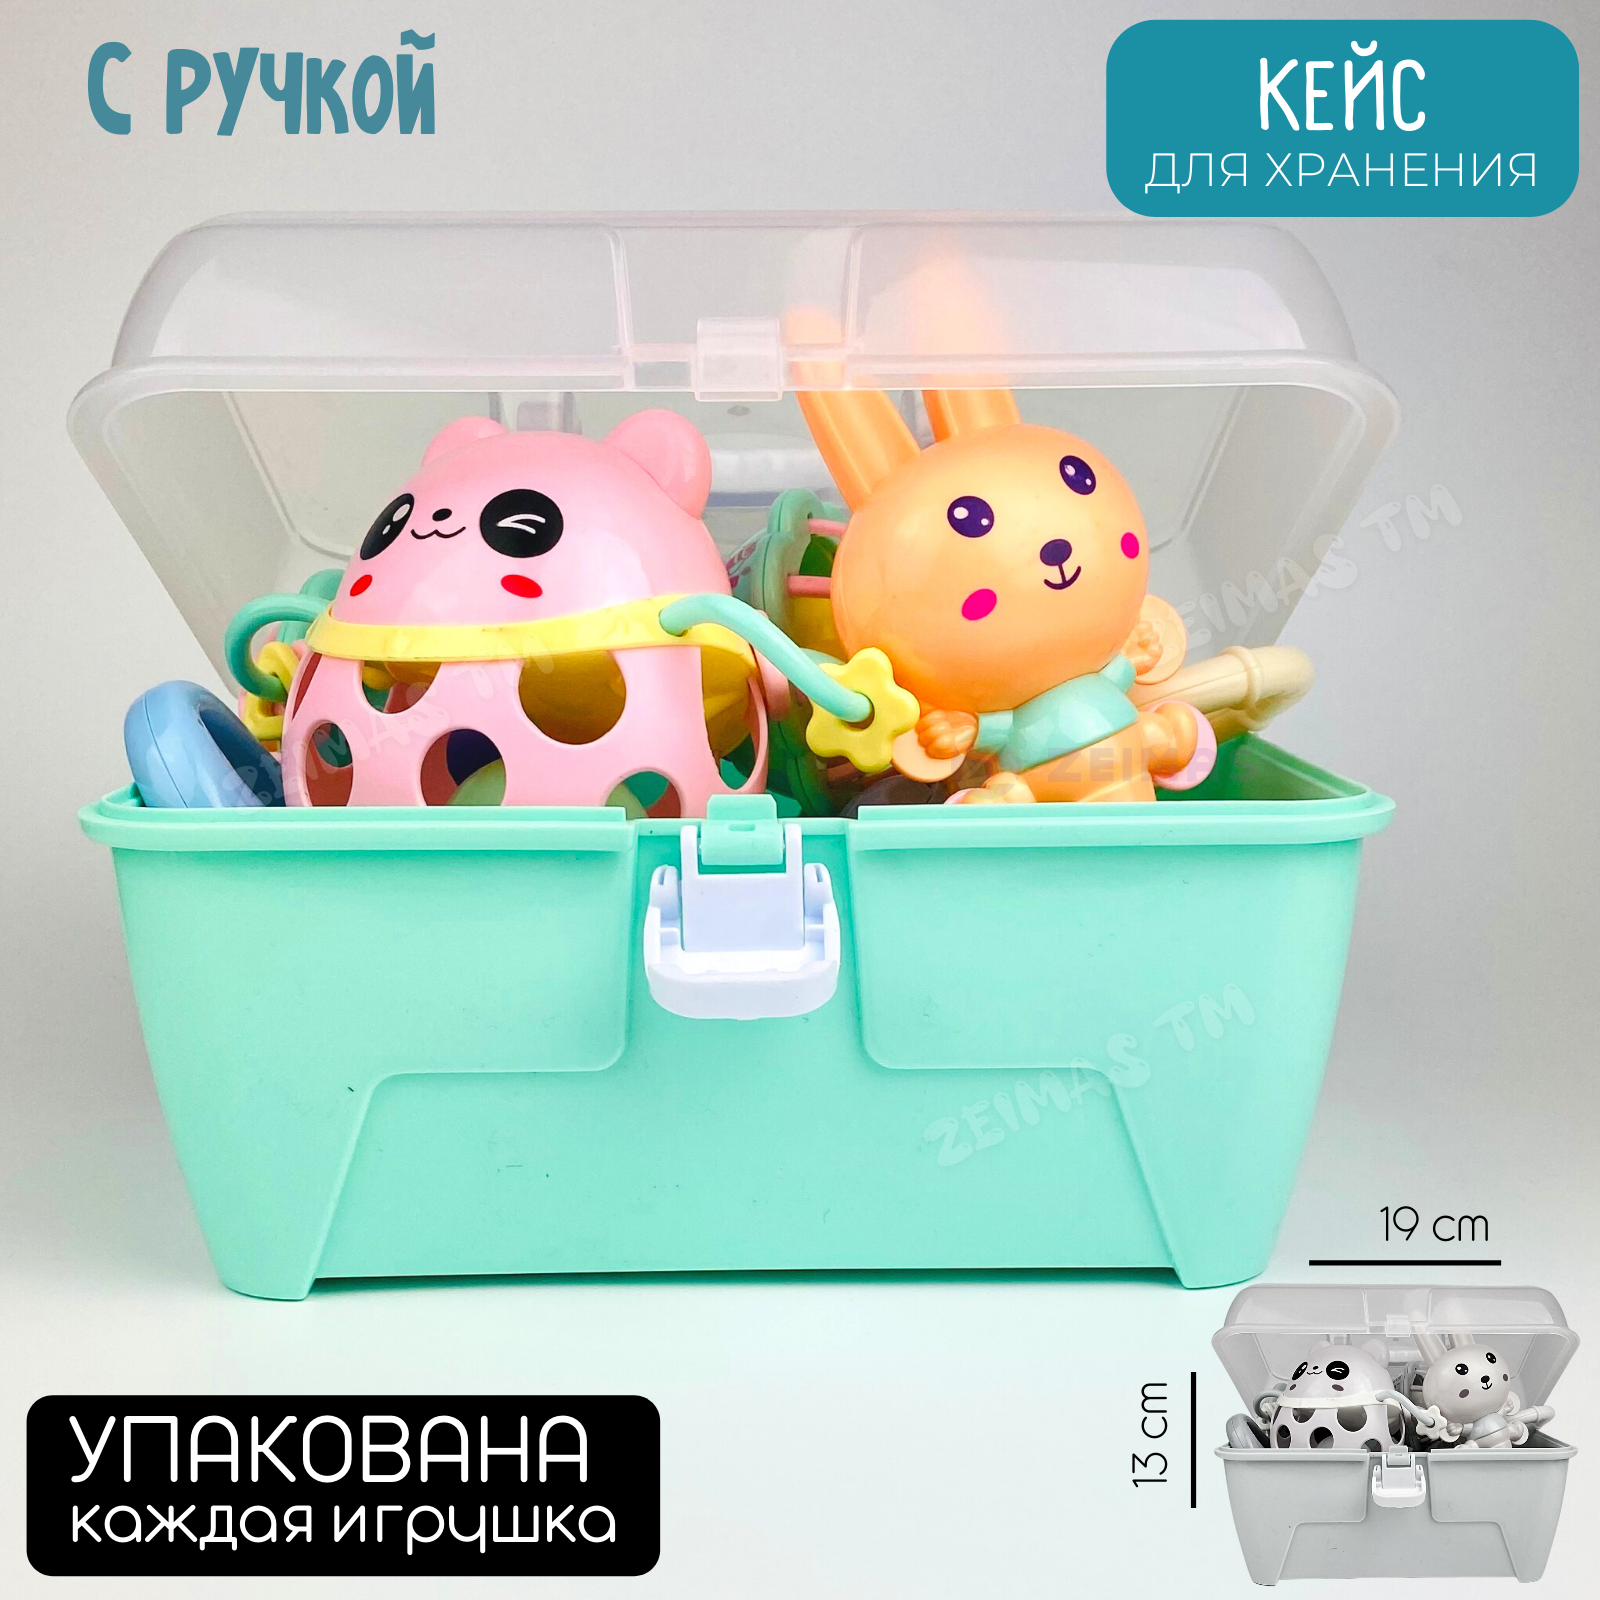 Погремушки и прорезыватели Zeimas развивающие игрушки для новорожденного 0+ в кейсе 14 шт - фото 7